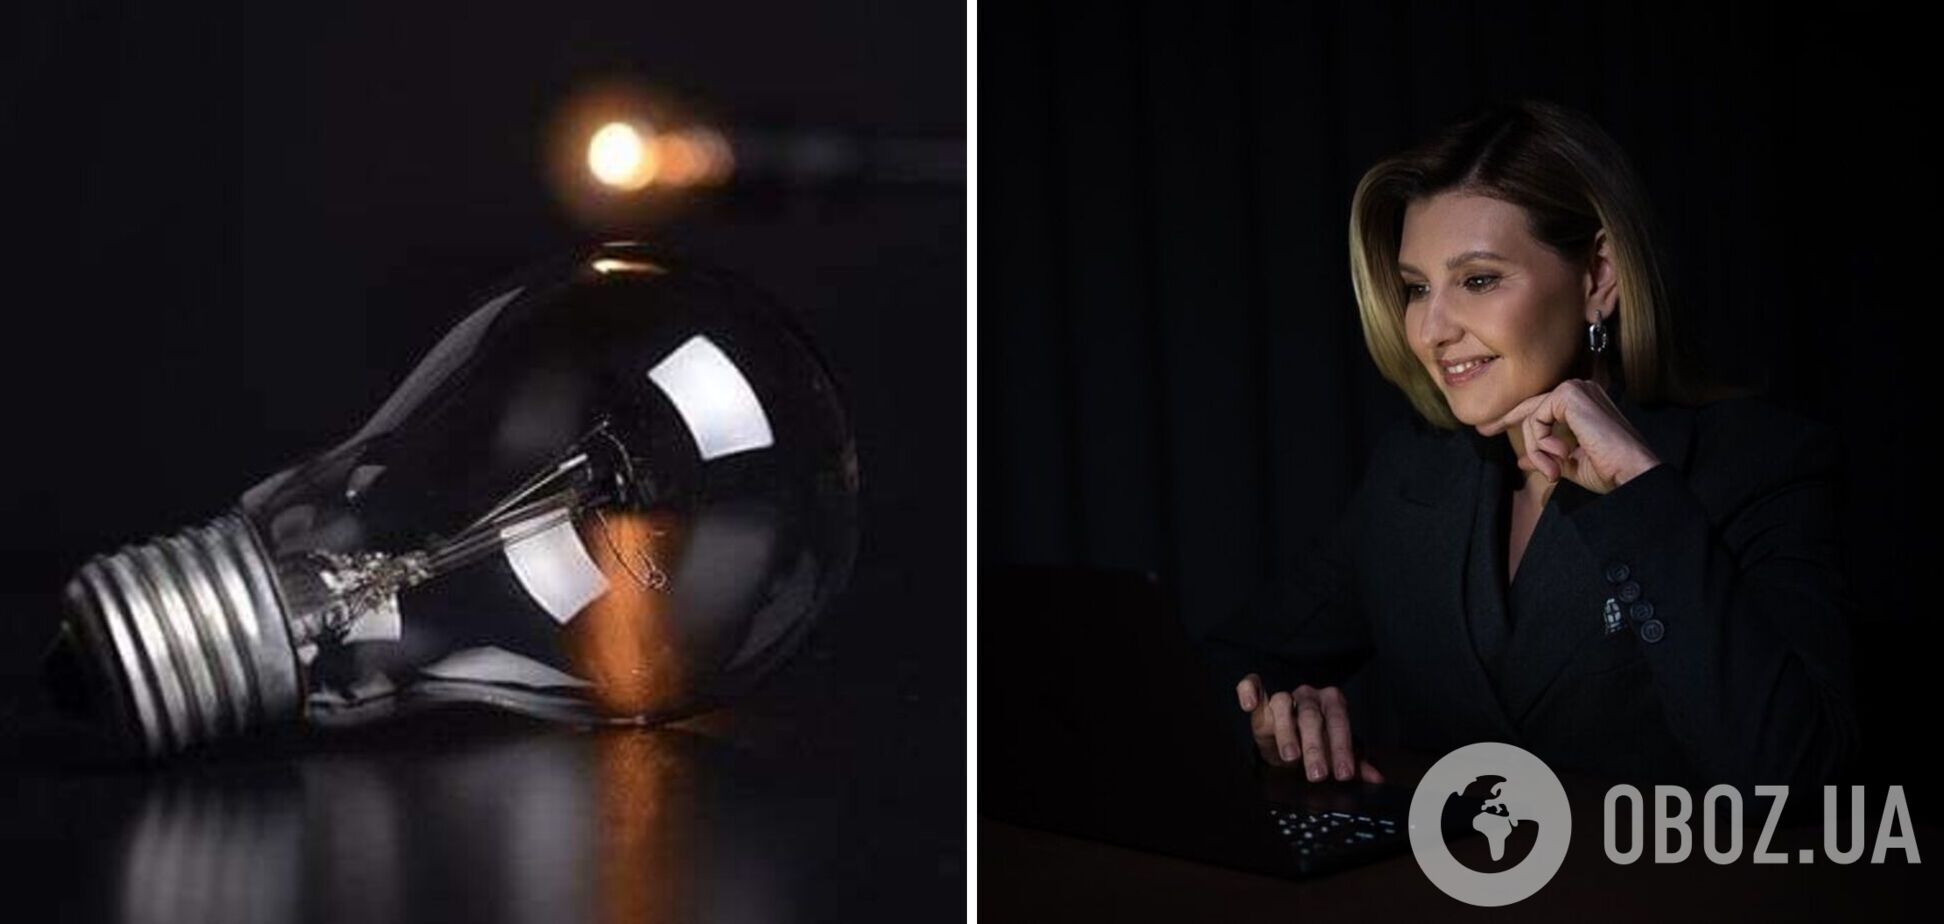 Олена Зеленська показала, як працює в темряві, та надихнула мережу. Фото